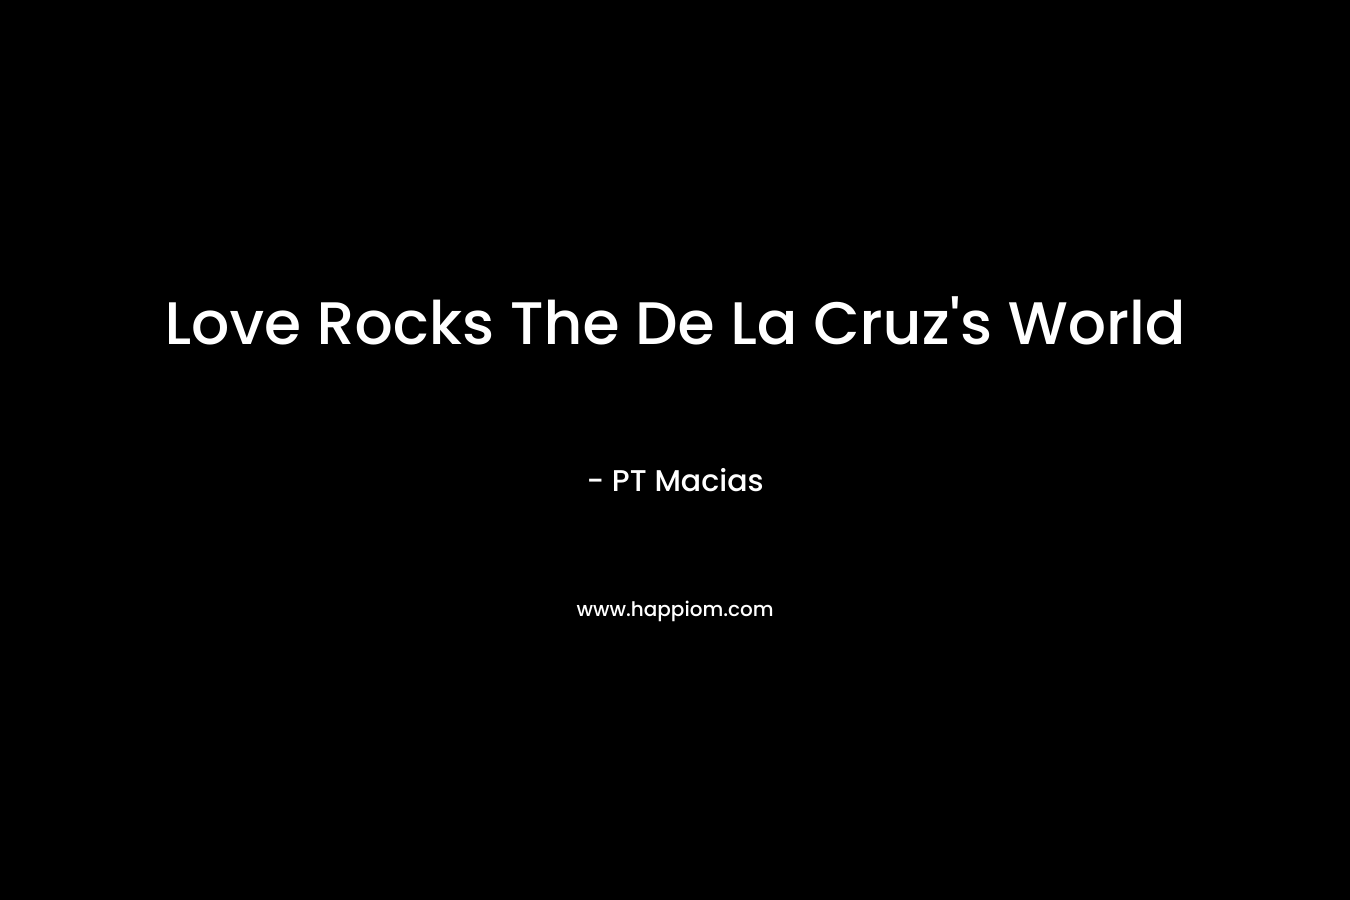 Love Rocks The De La Cruz’s World – PT Macias